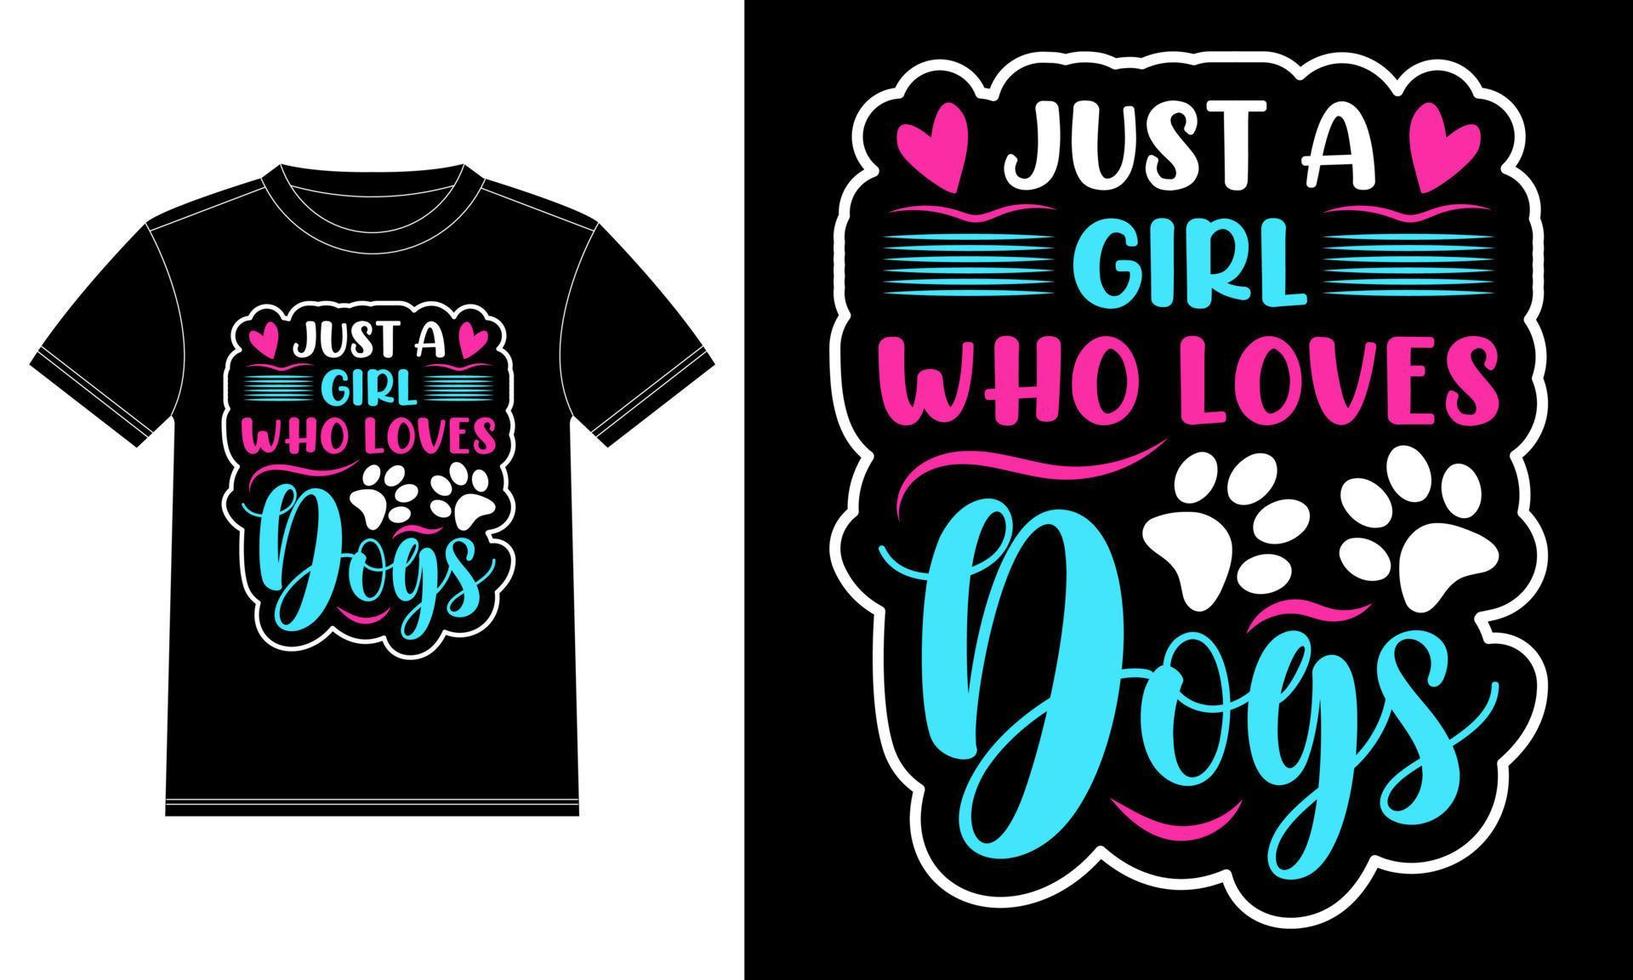 appena un' ragazza chi gli amori cani - cane maglietta design. vettore grafico, maglietta design modello, auto finestra etichetta, baccello, coperchio, isolato nero sfondo, tazza, manifesto per cane amanti.